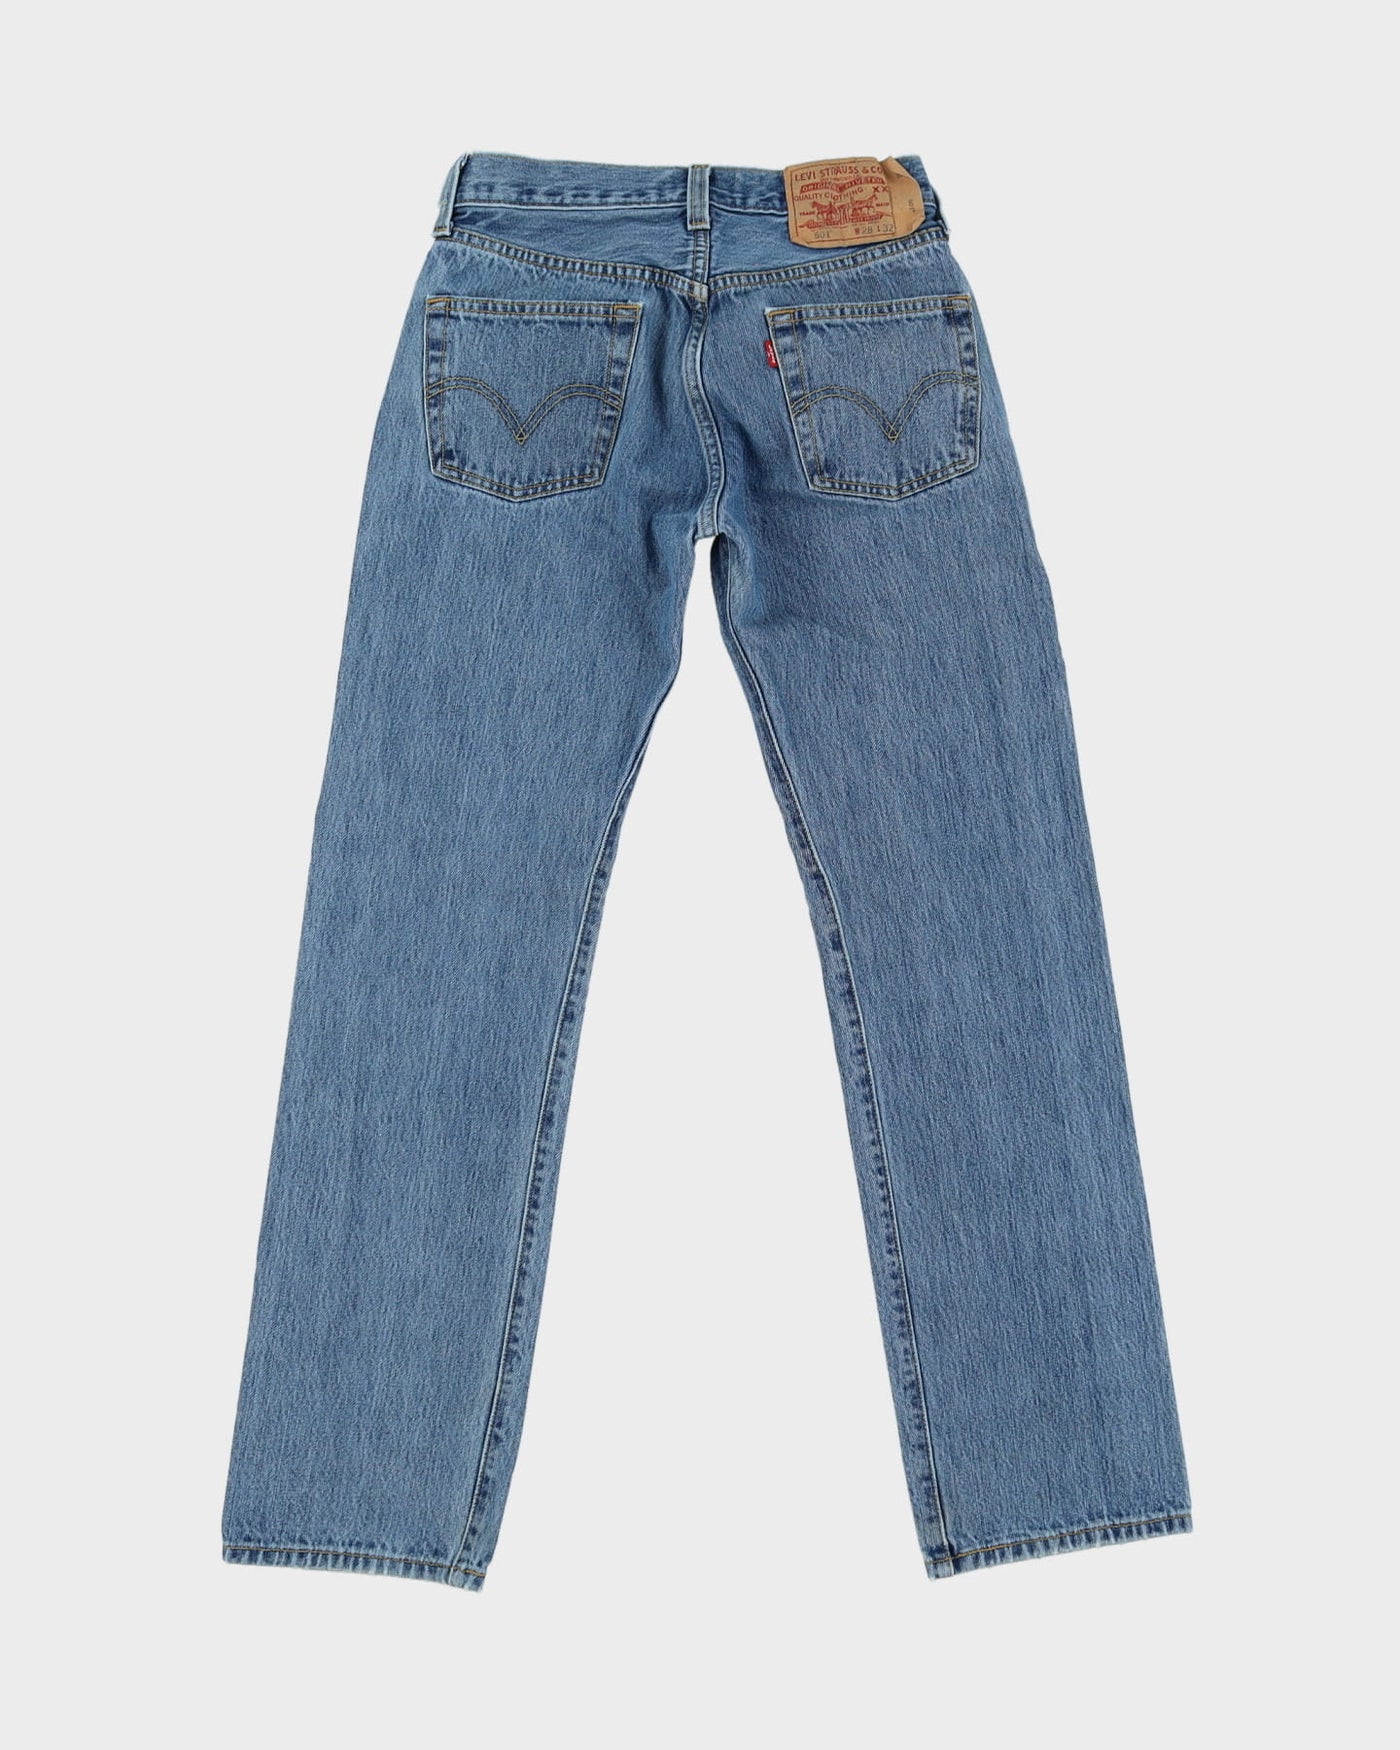 Vintage 90s Levi's 501 Blue Jeans - W27 L30